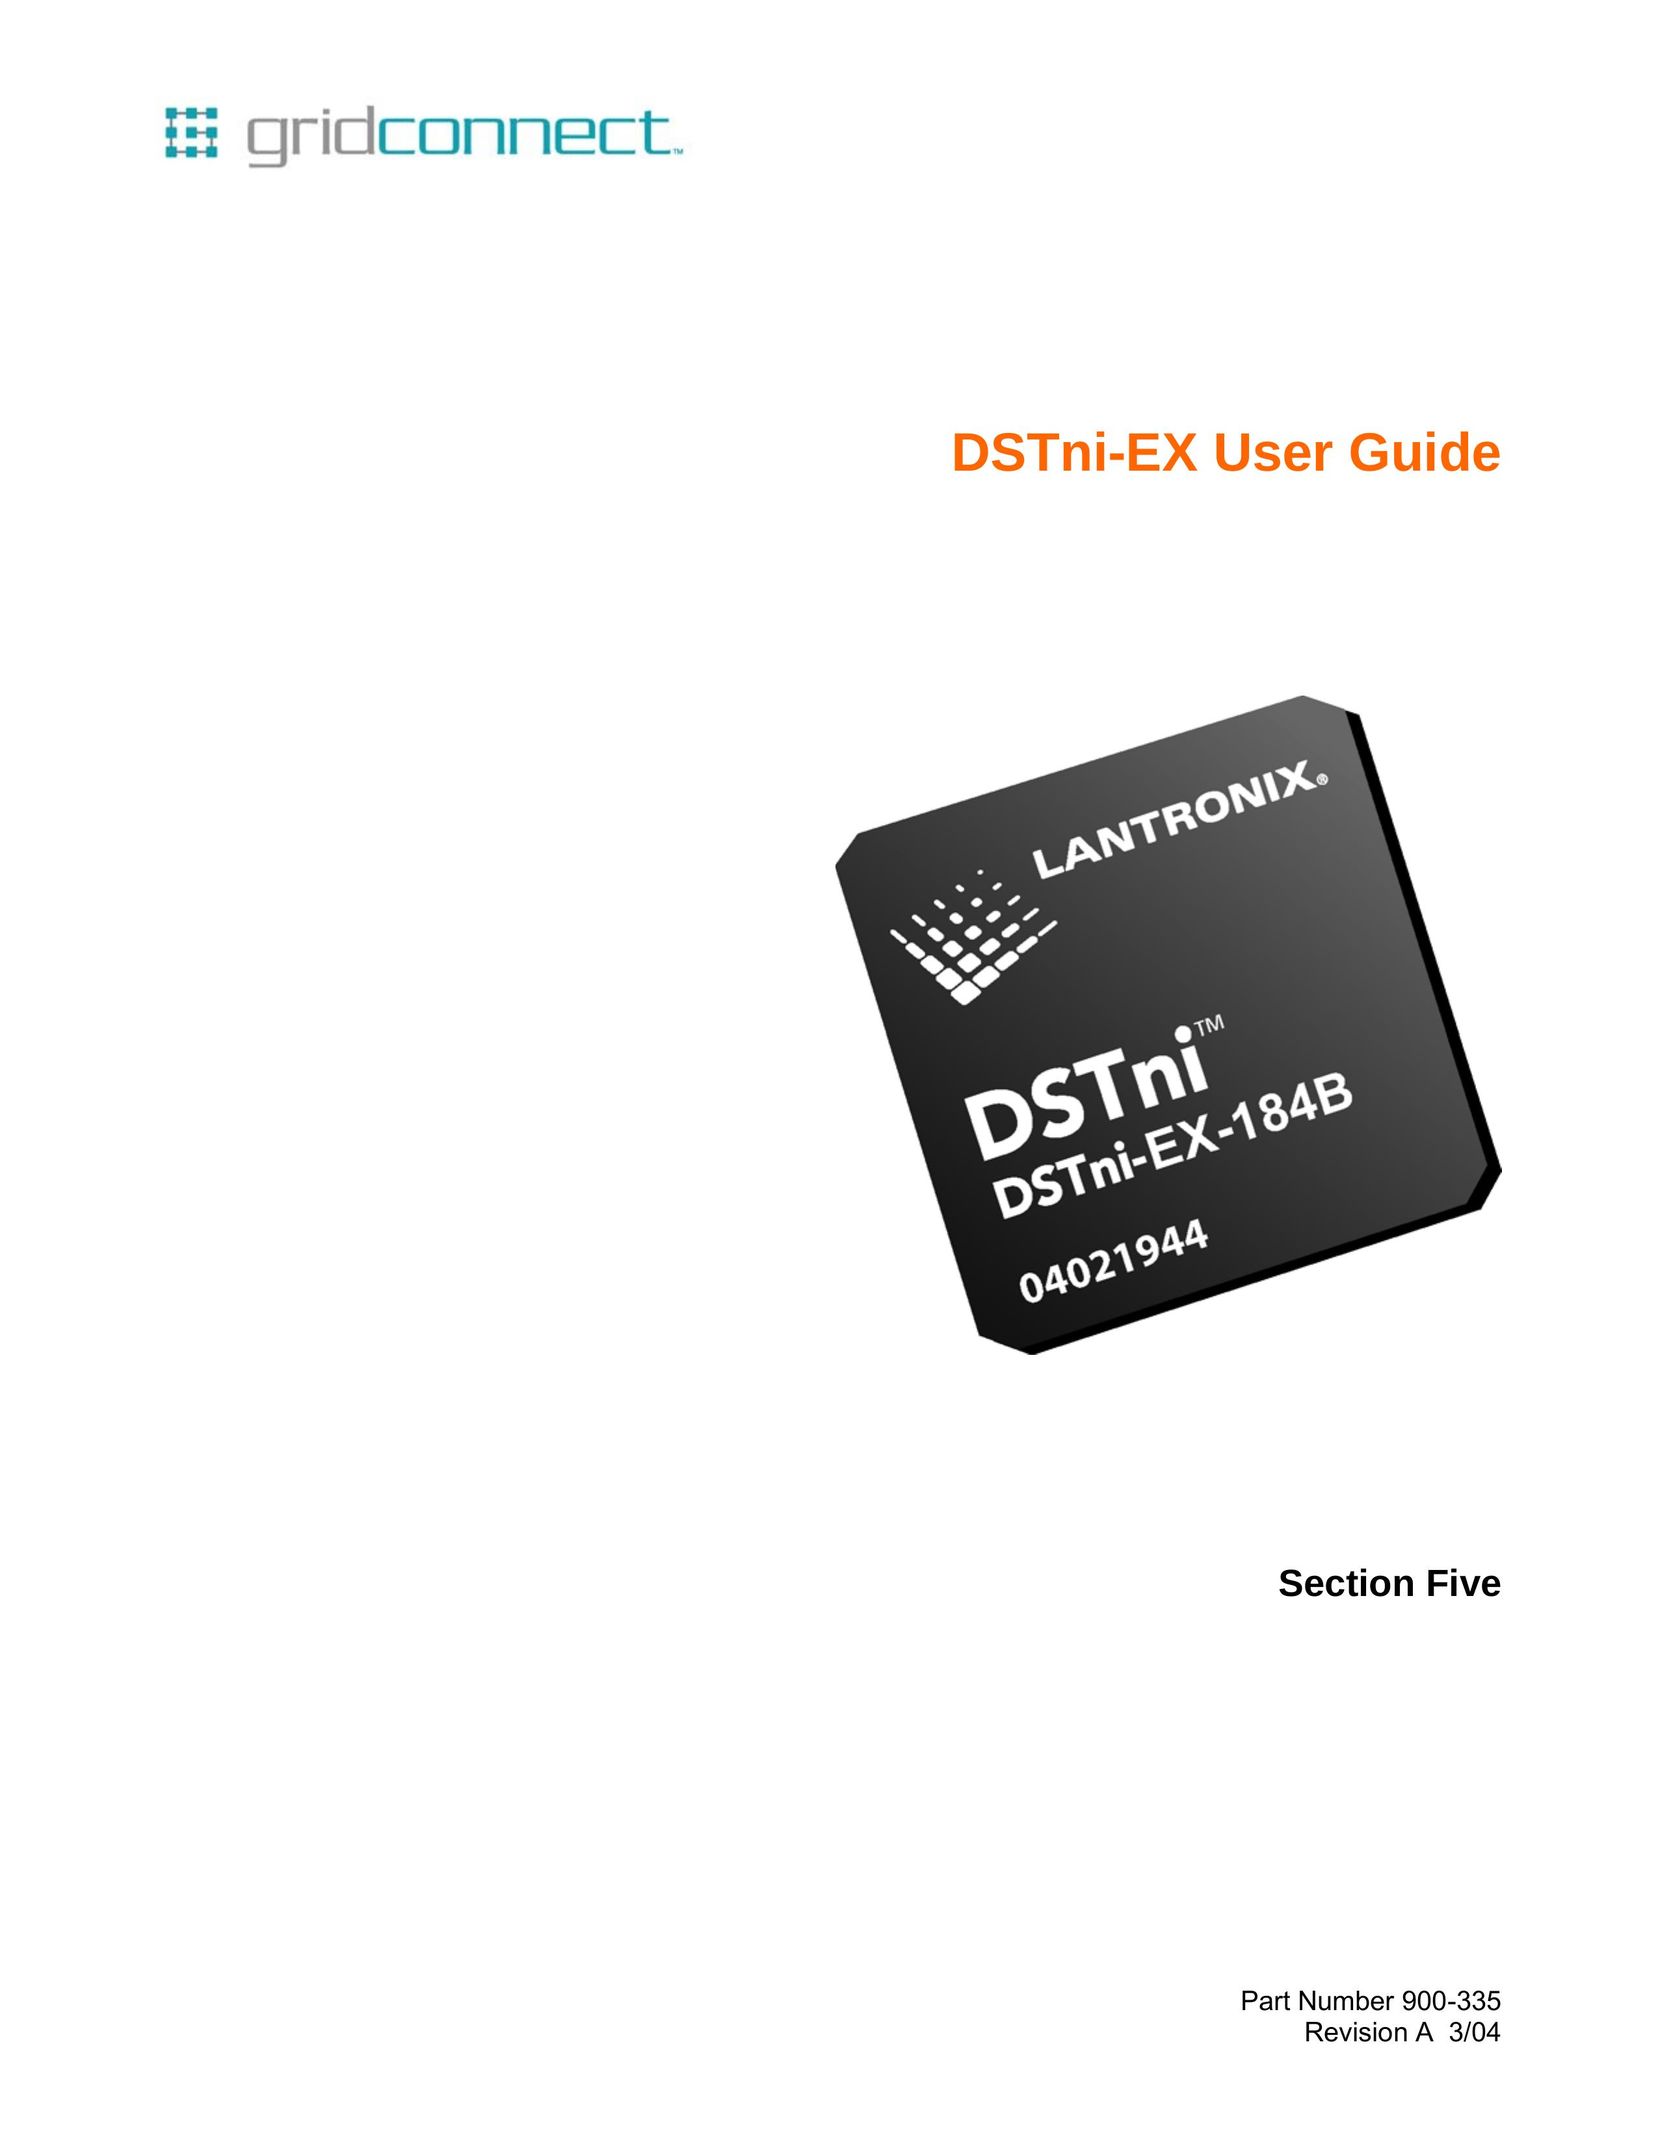 Lantronix DSTni-EX Computer Hardware User Manual